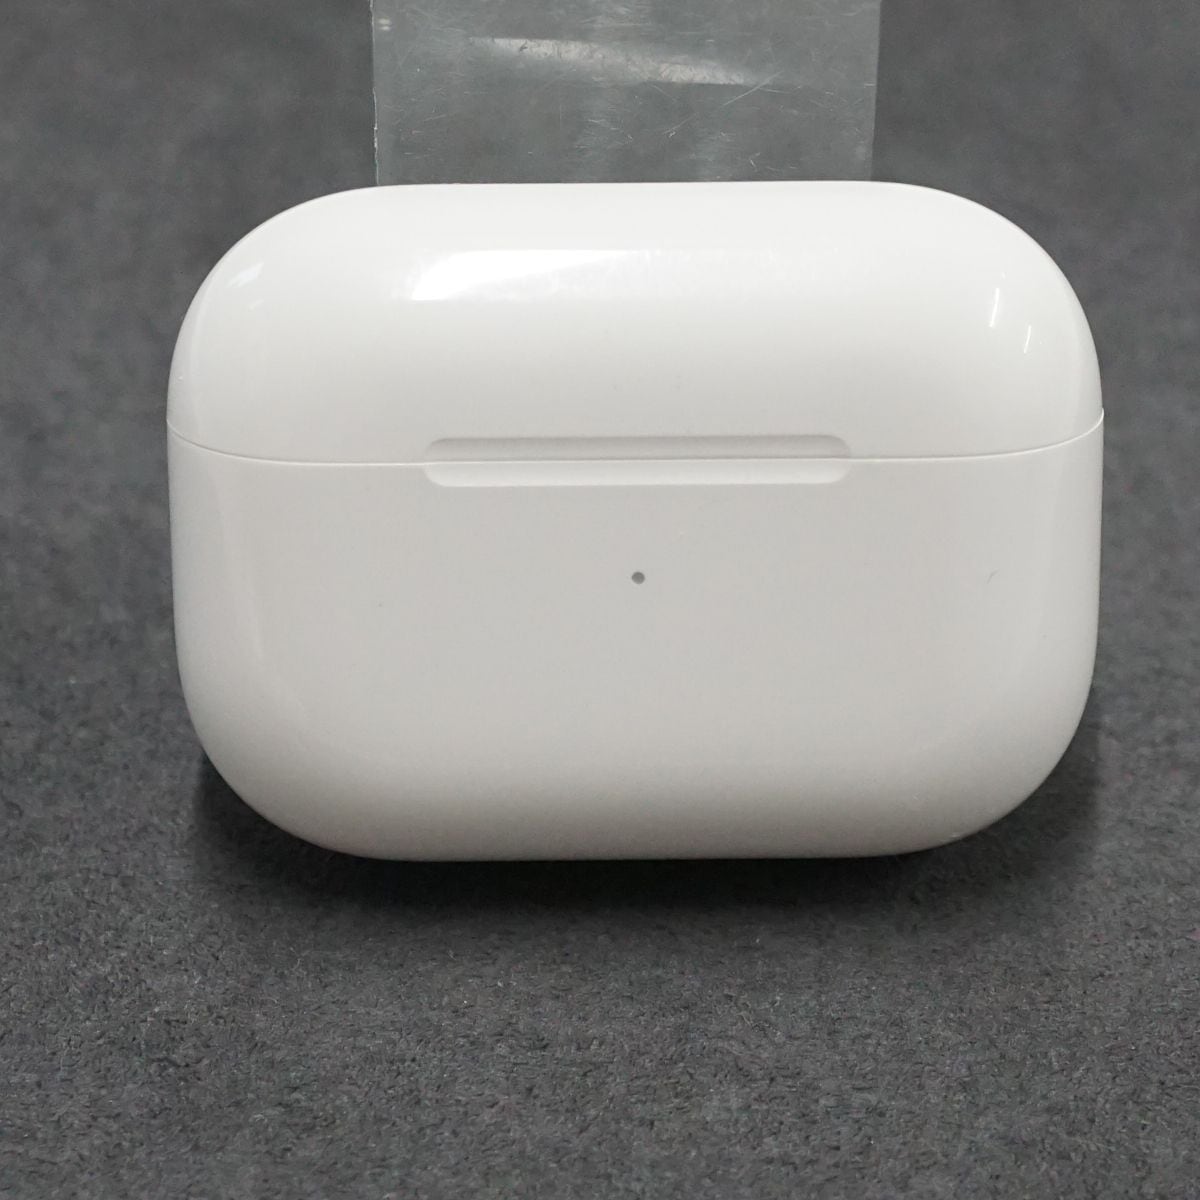 エアーポッズ 第二世代 ワイヤレス充電ケース Apple国内純正品